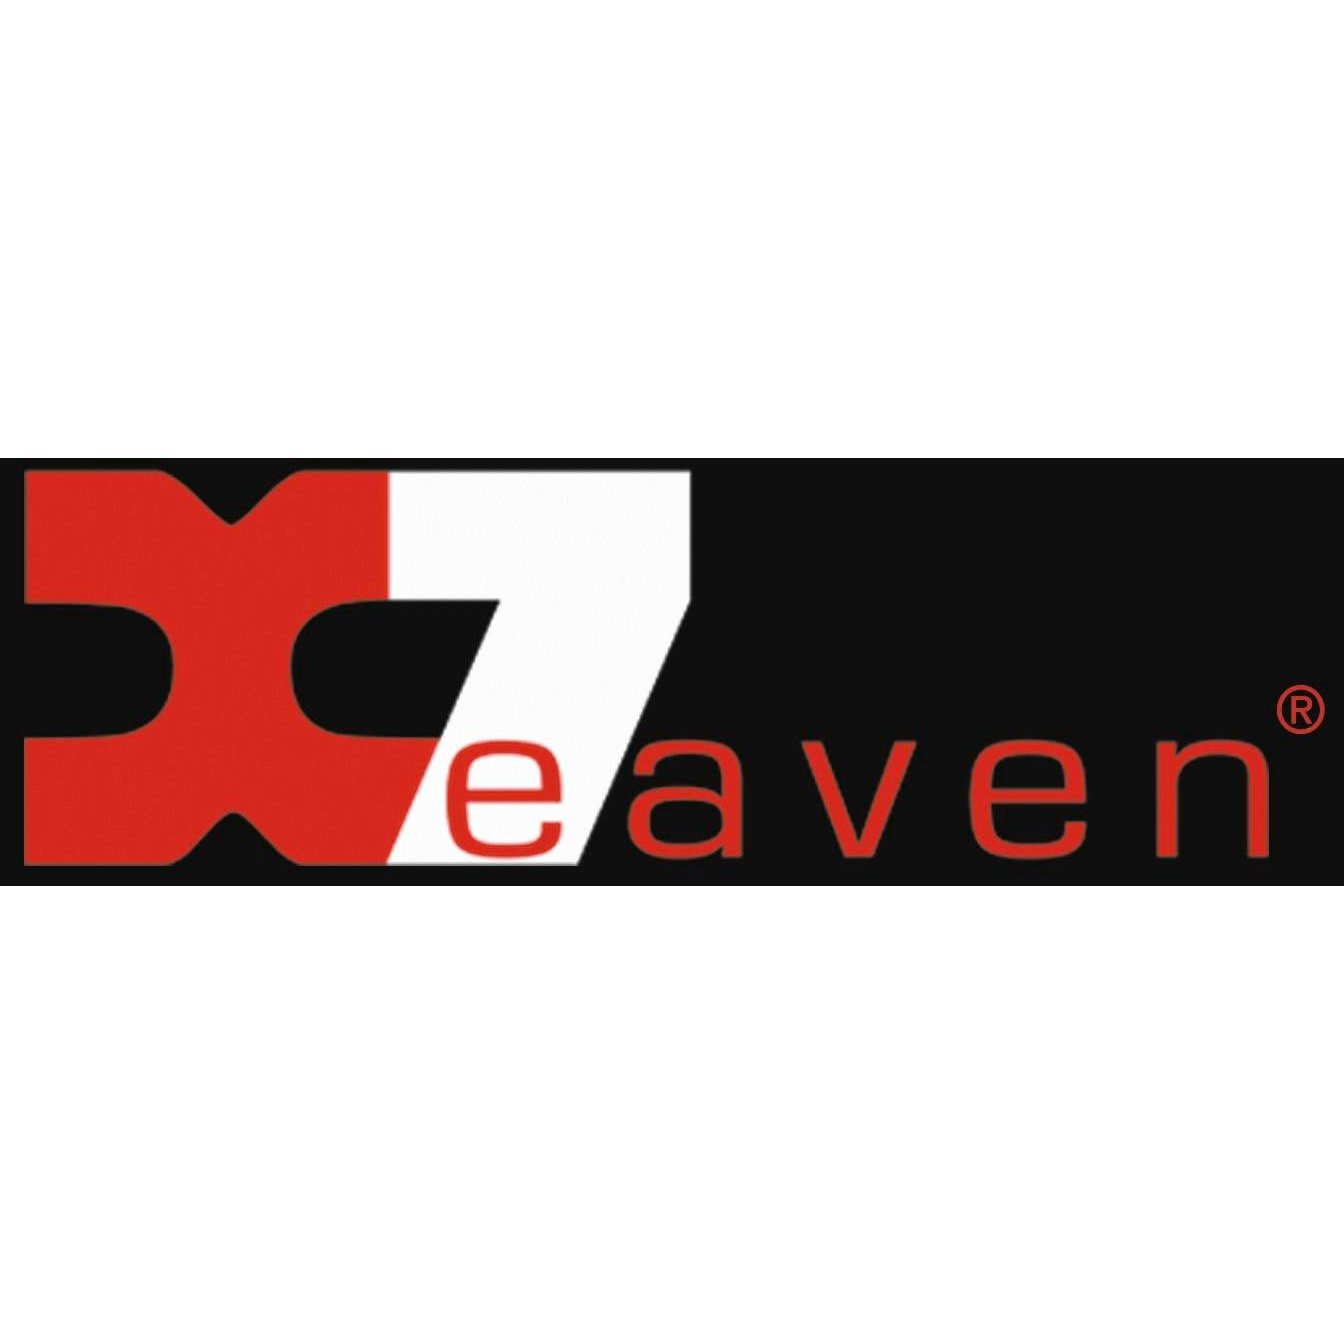 X7eaven Productions Ltd - London, London - 020 8221 1000 | ShowMeLocal.com